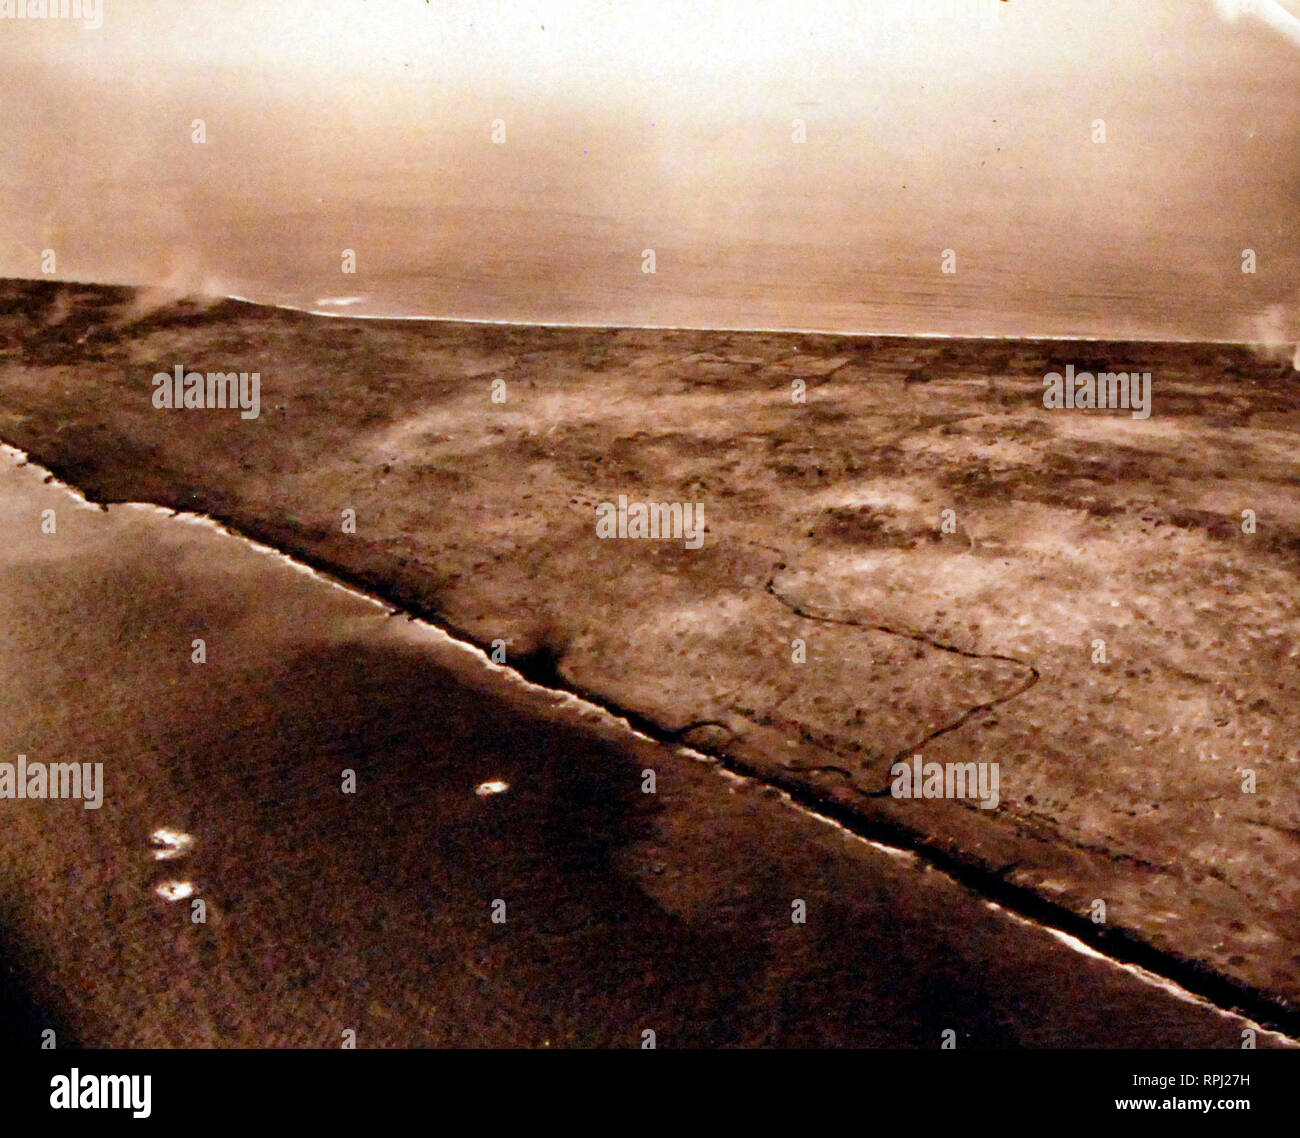 Schlacht um Iwo Jima, Februar-März 1945. Angezeigt: Titel von US-amphibische Panzer auf dem Weg in Richtung Mt. Suribachi und luftschiff 1, 4,5 Stunden nach H-Stunde. Mit dem Flugzeug von USS Makin Island (CVE 93) am D-Day, 19. Februar 1945 fotografiert. Stockfoto